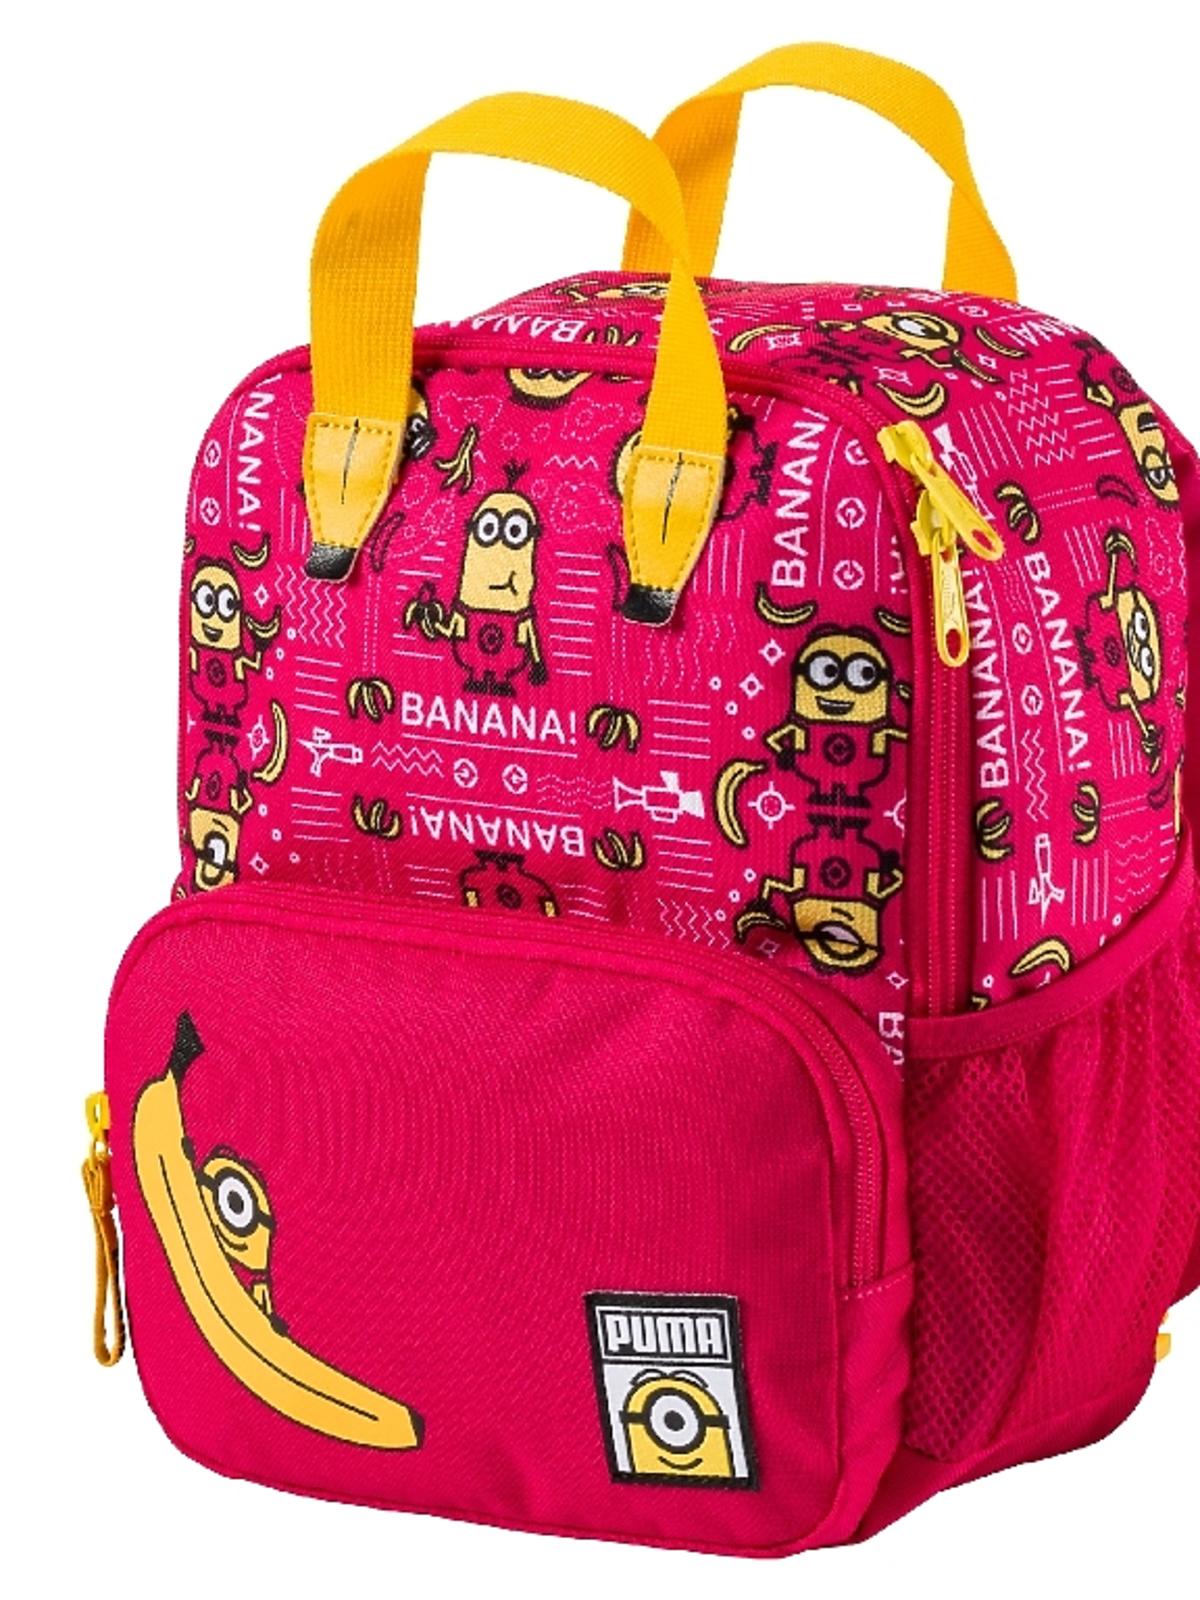 plecak różowy dla dziewczynki Puma Kids z Minionkami - 169zł.jpeg